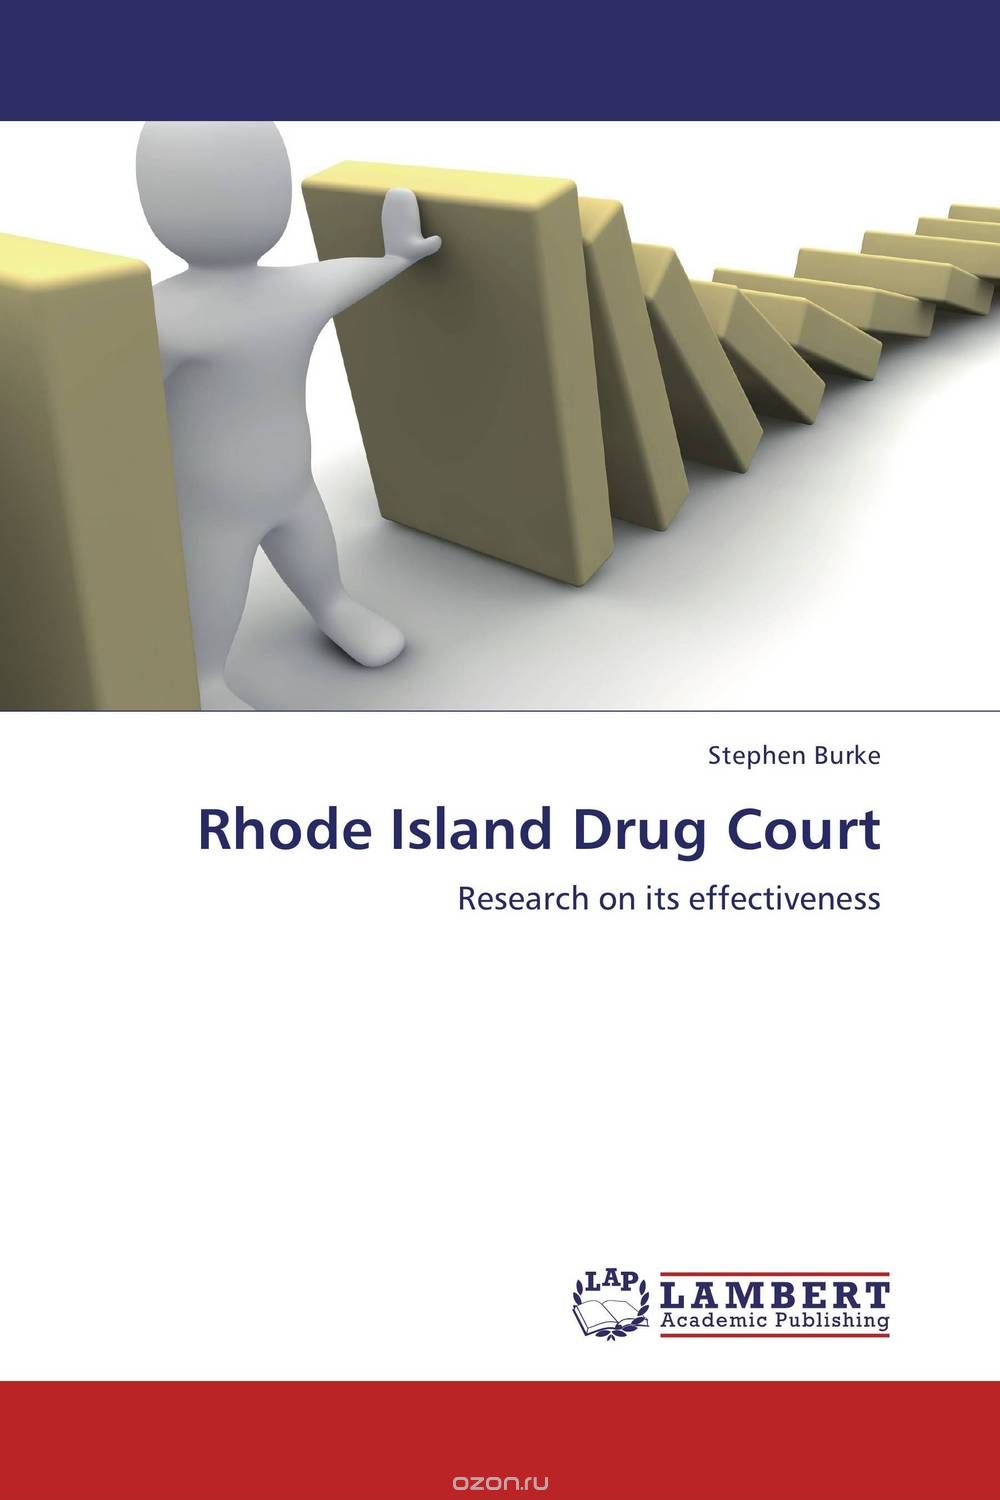 Скачать книгу "Rhode Island Drug Court"